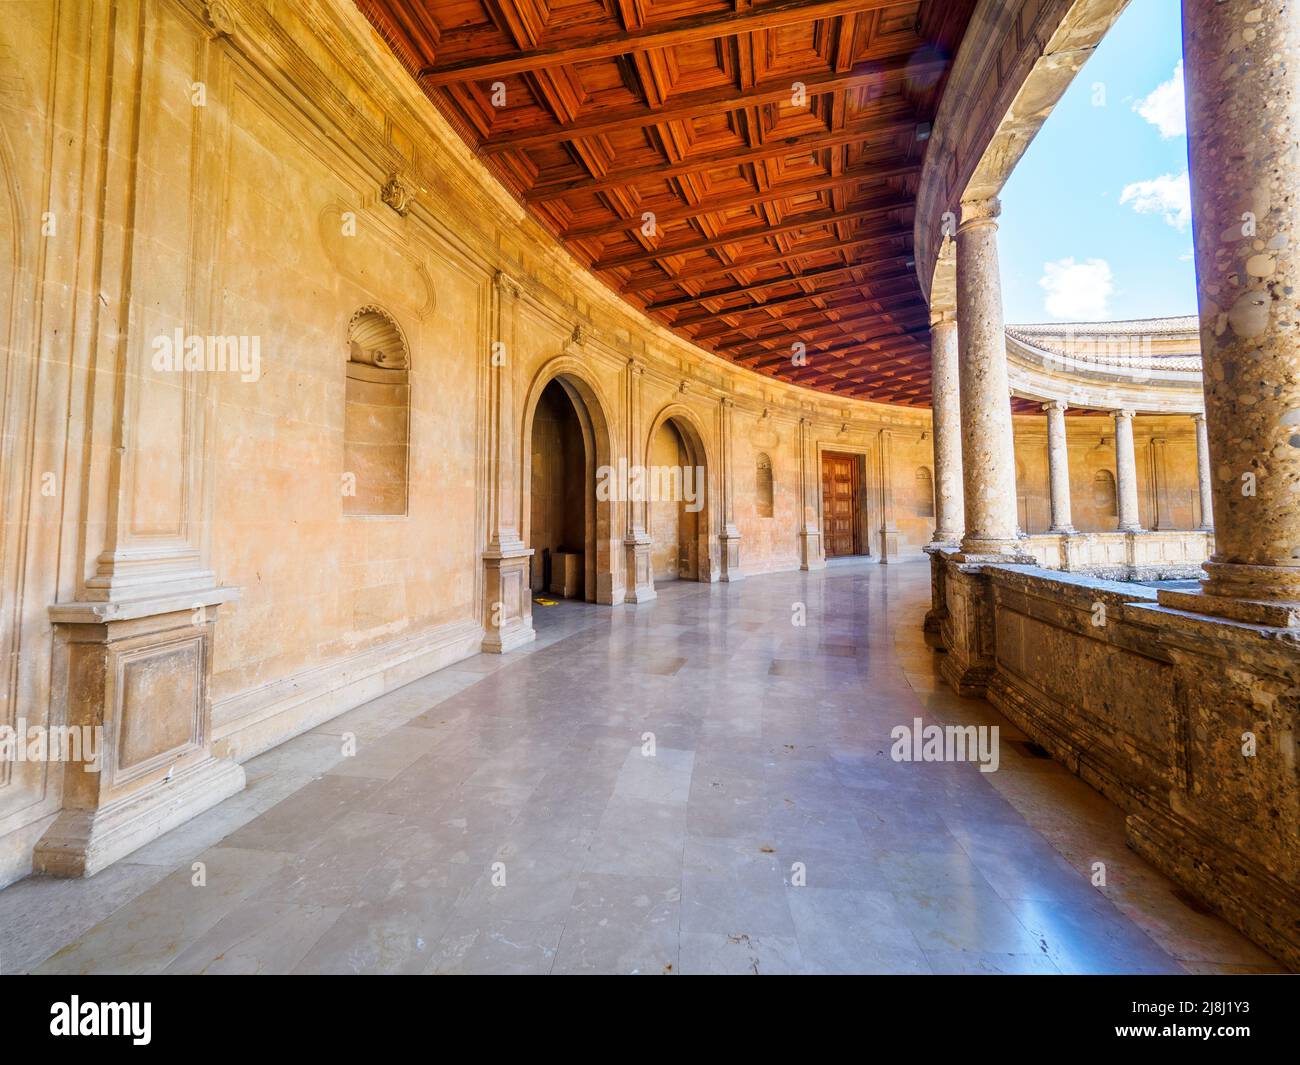 Innenhof des Palastes von Karl V. - Alhambra-Komplex - Granada, Spanien Stockfoto